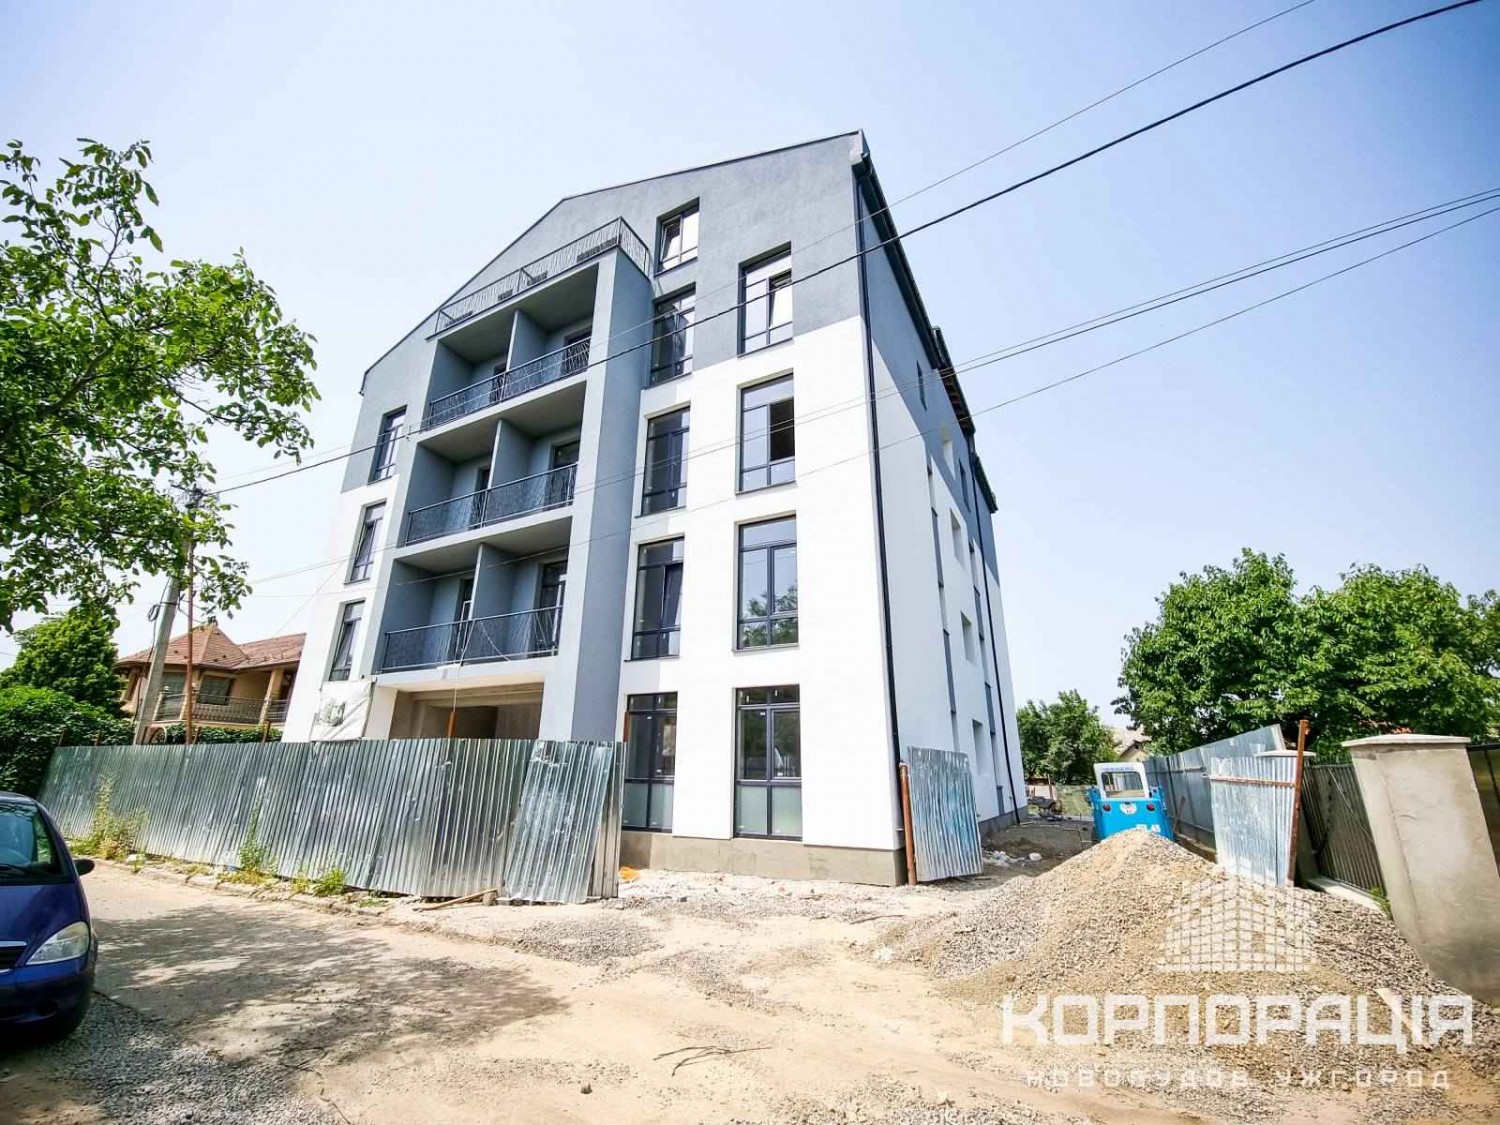 Оновлений фотозвіт житлового комплексу "Брест" - сучасної новобудови Ужгорода поблизу центру міста